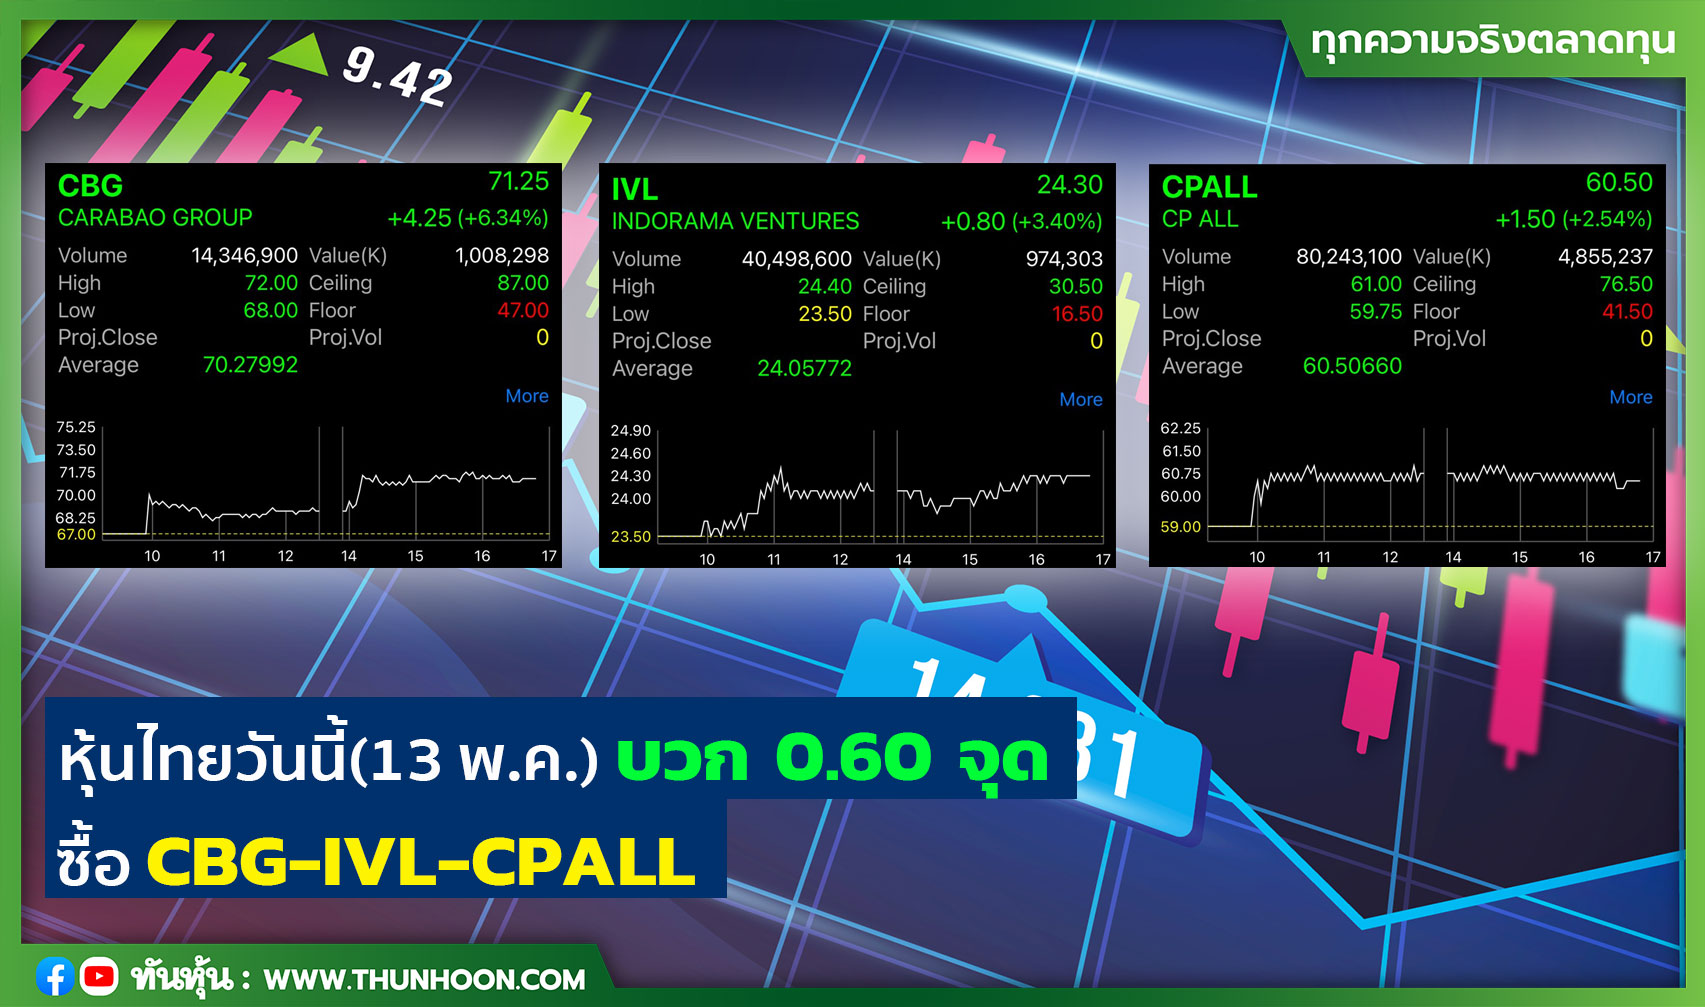 หุ้นไทยวันนี้(13 พ.ค.) บวก 0.60 จุด ซื้อ CBG-IVL-CPALL 